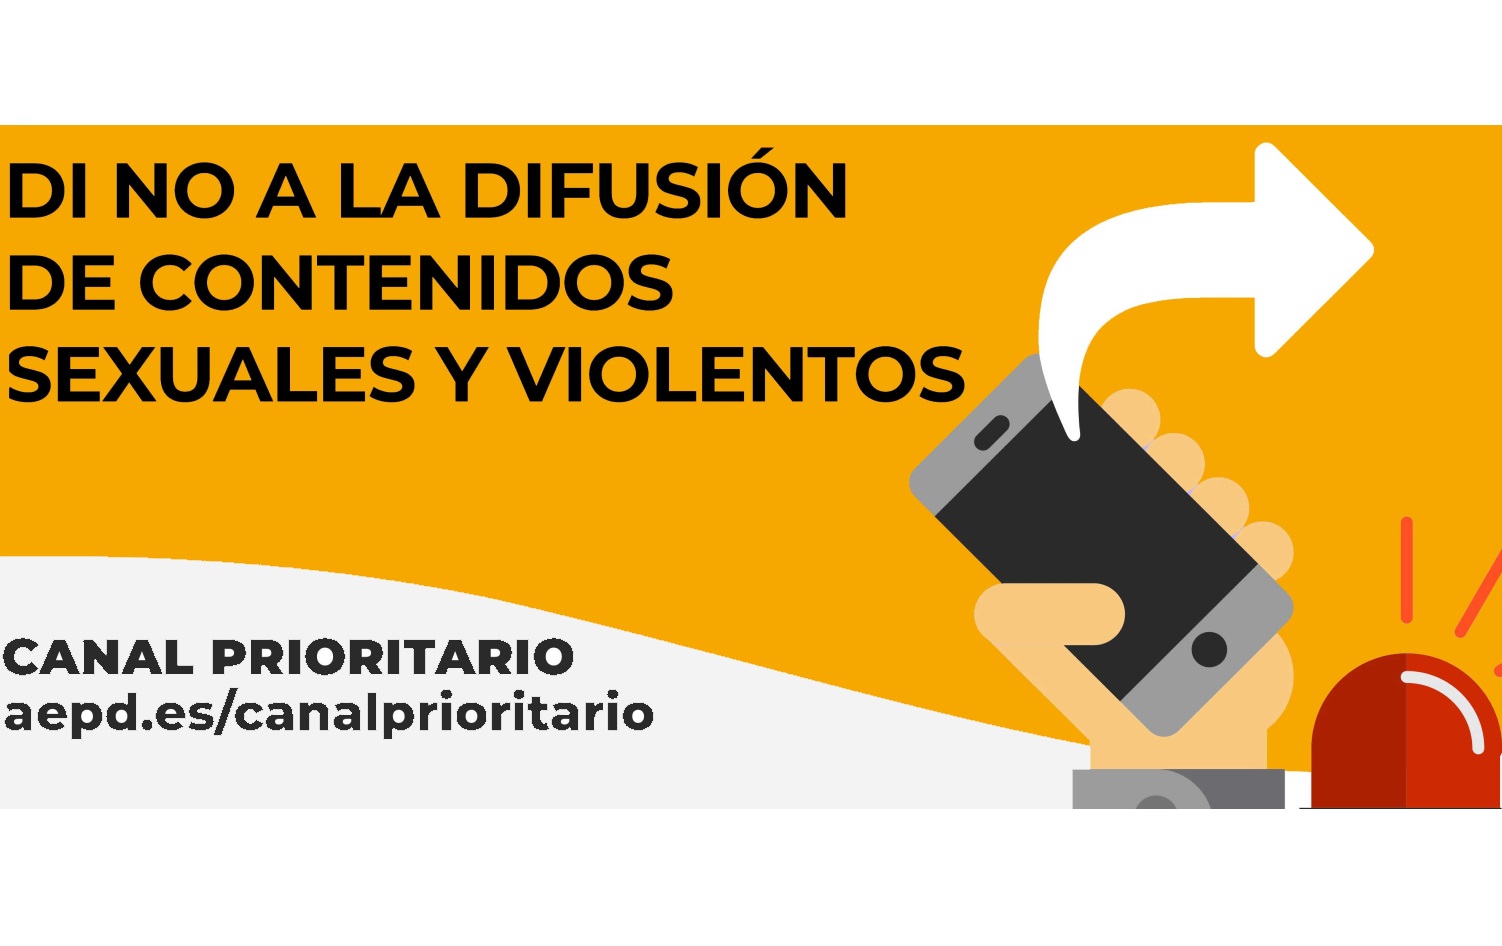 campaña-loparasolopasas-no-difusion-contenidos-sexuales-violentos_principal